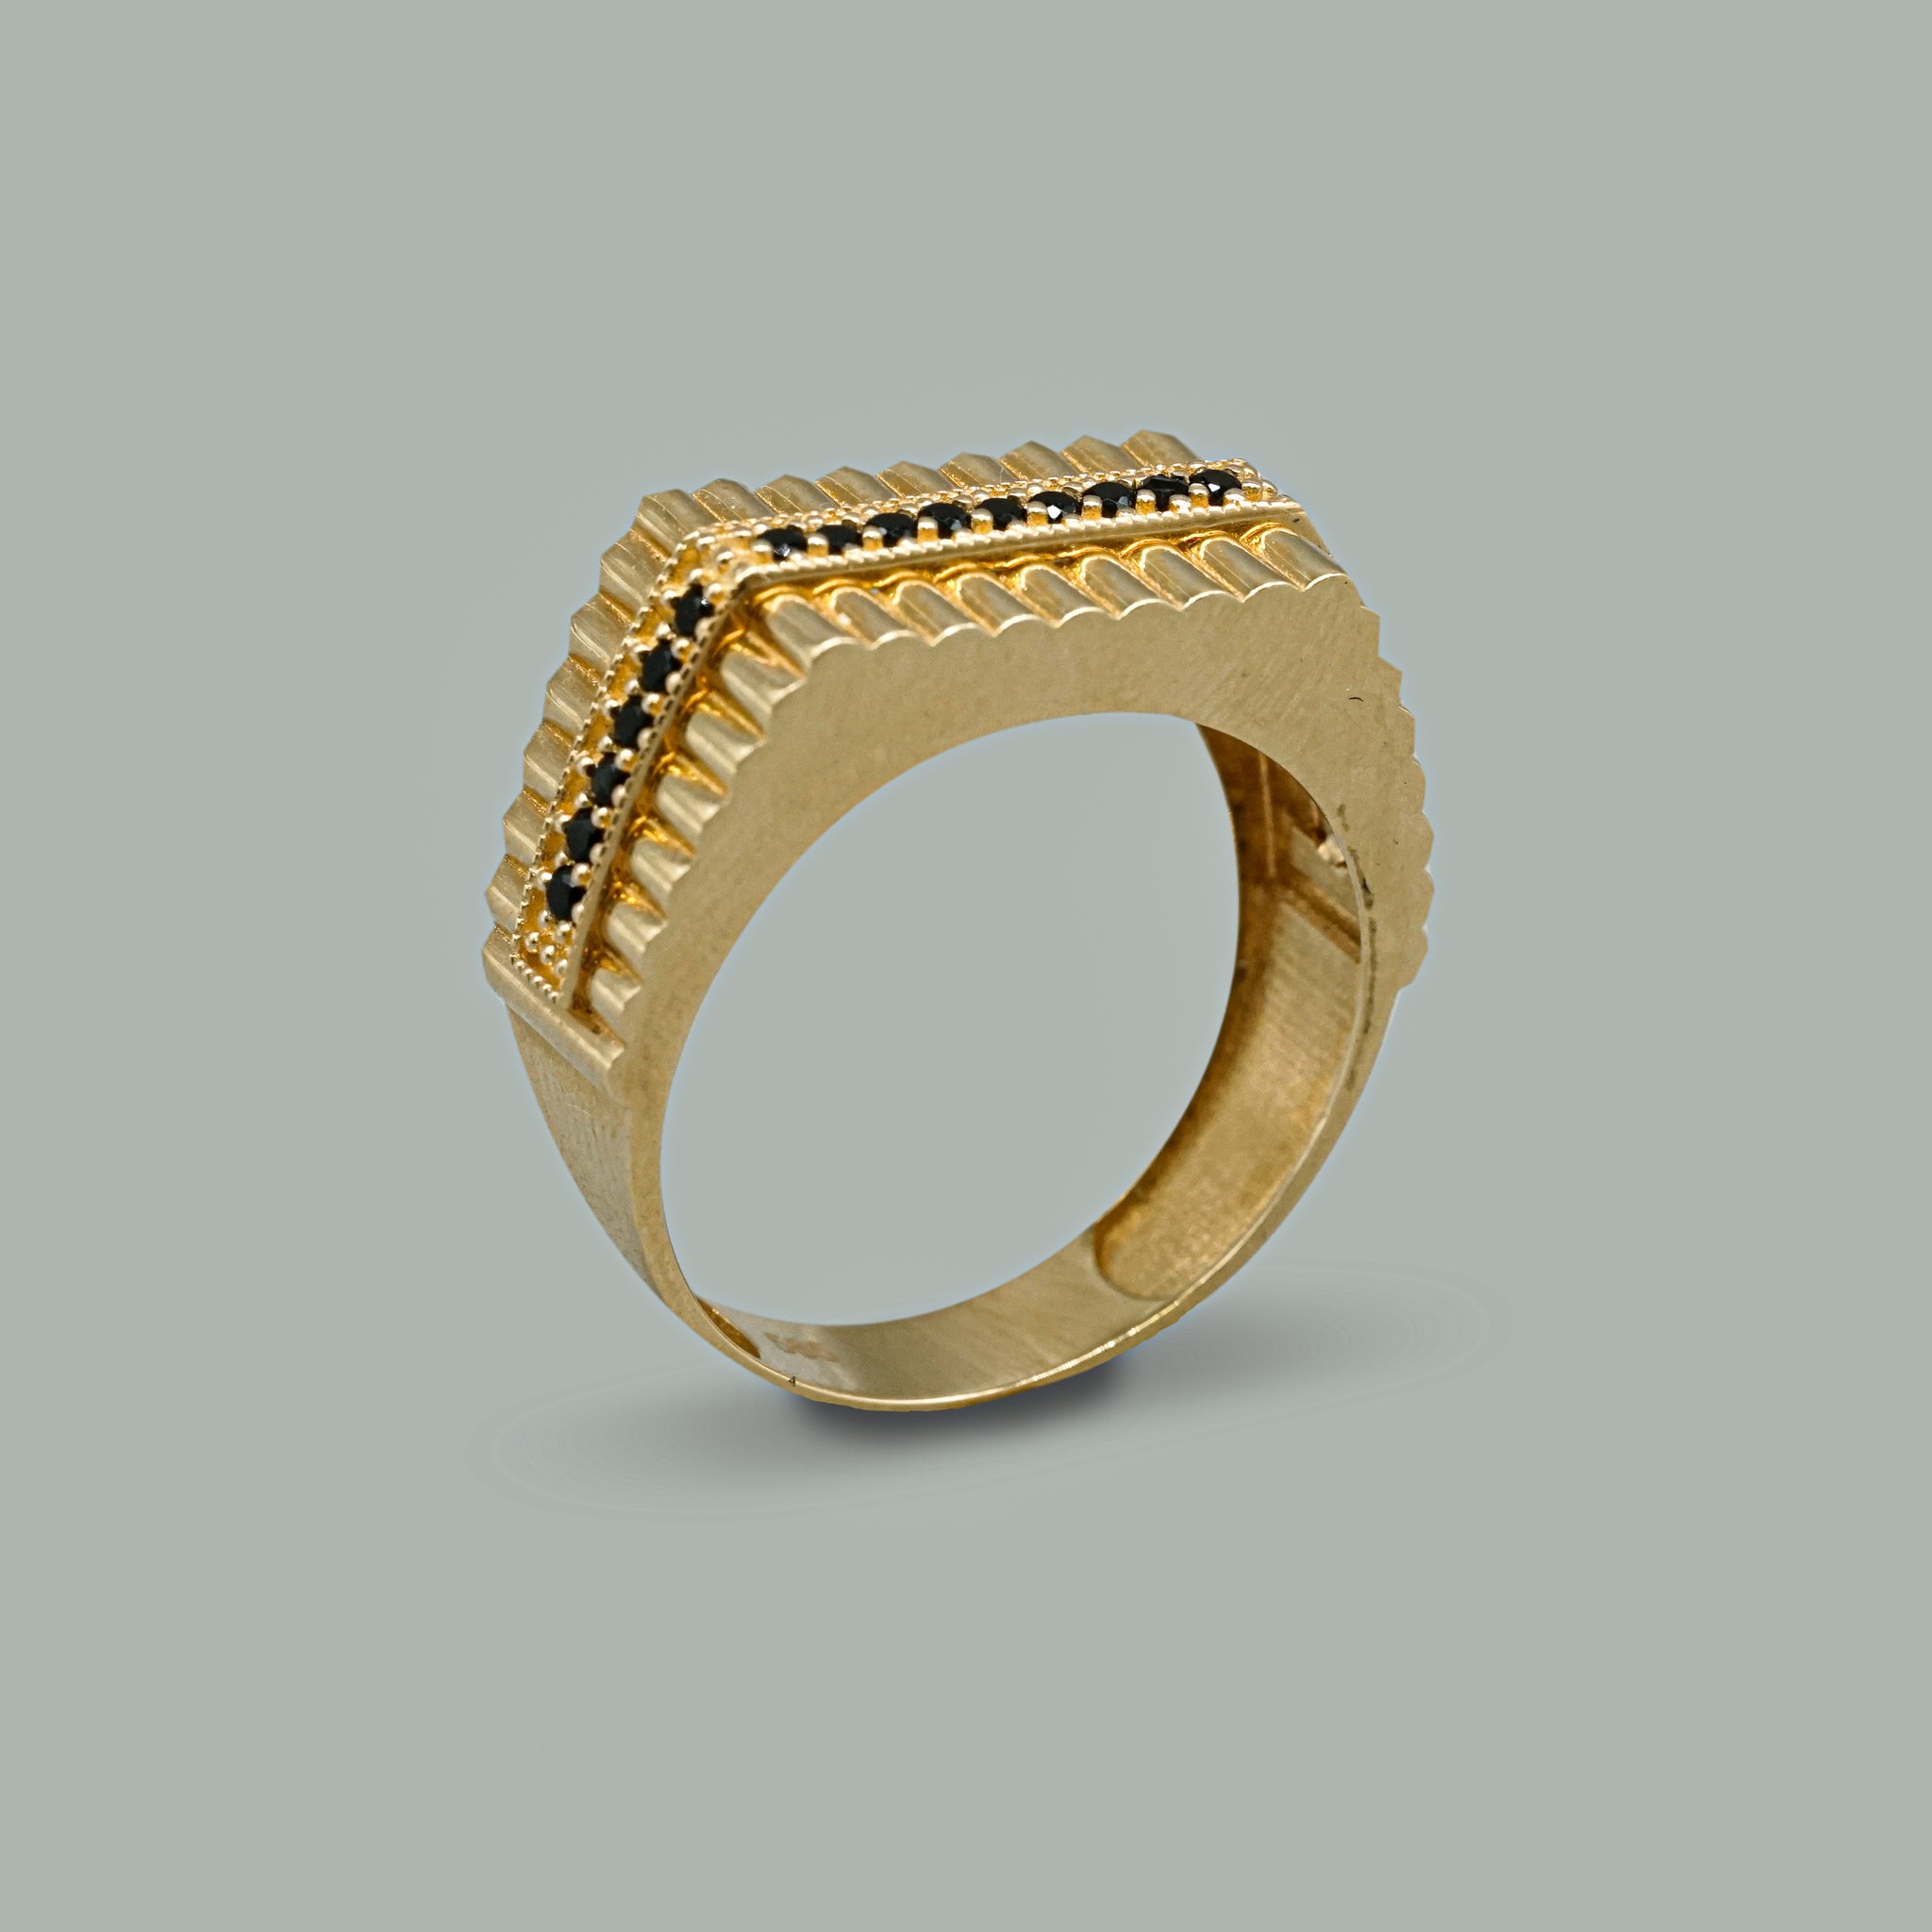 Herren Ring 14 Karat 585 Gelbgold mit schwarzem Zirkonia Stein